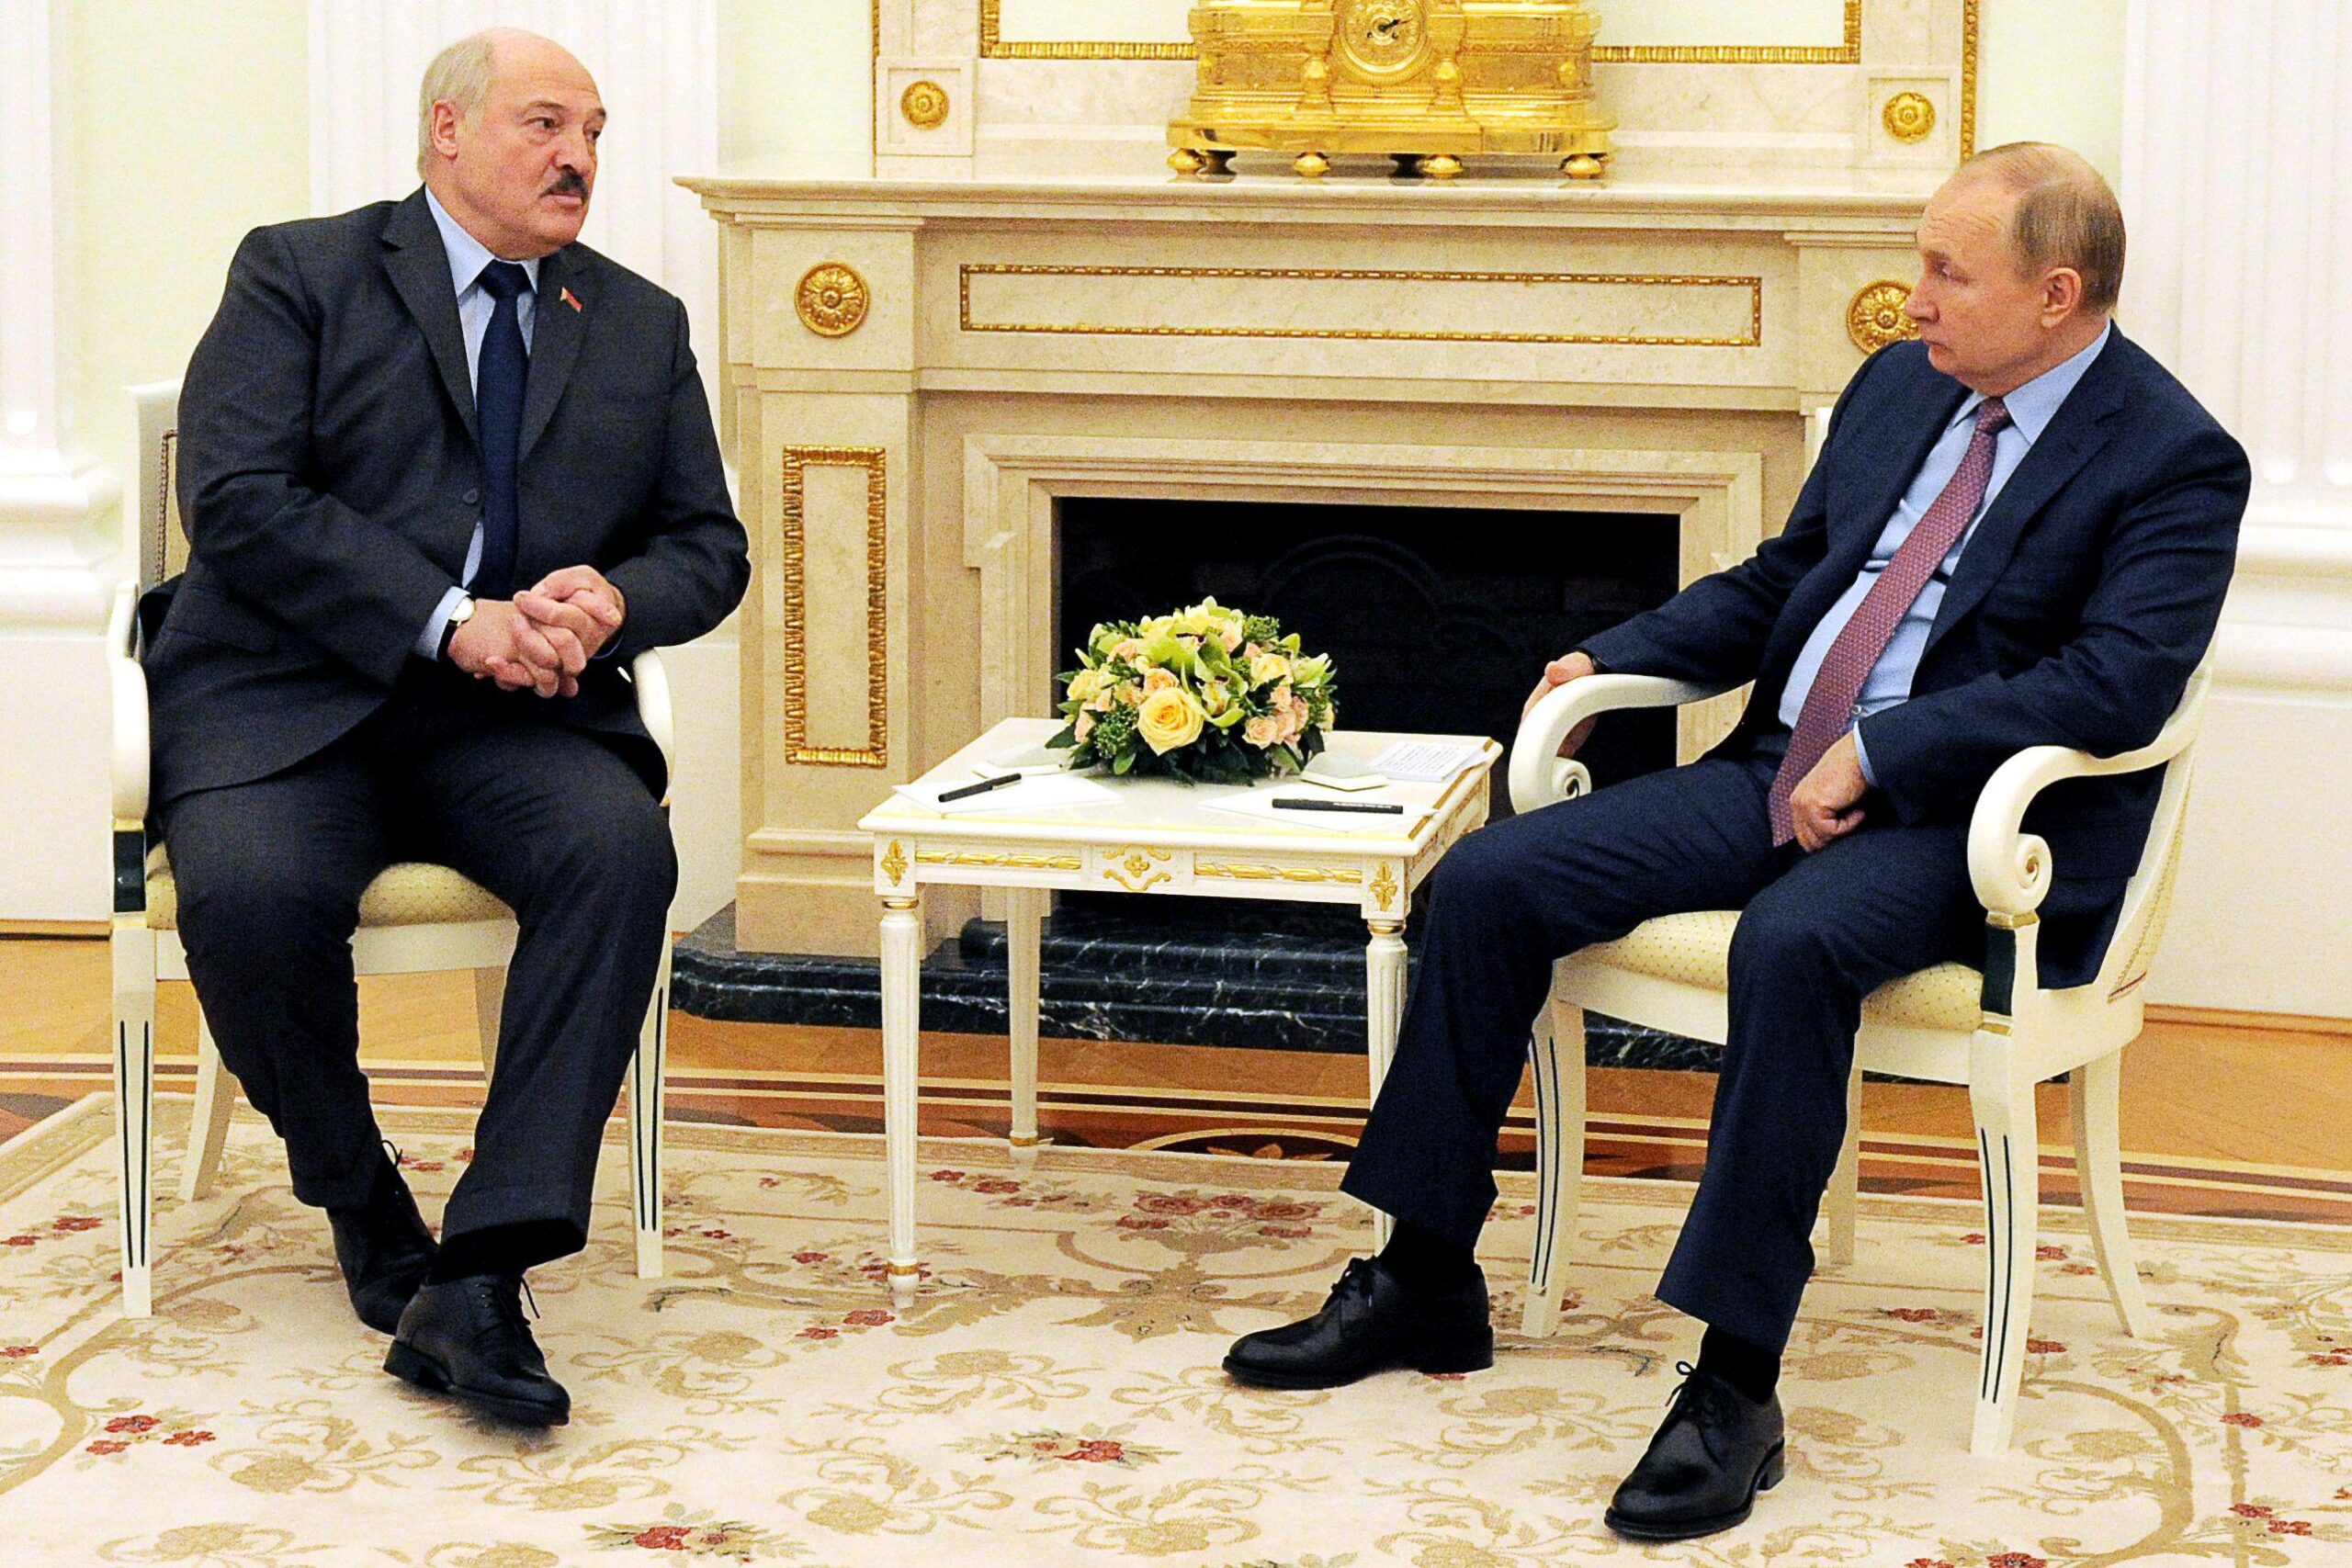 El presidente de Bielorrusia, Alexander Lukashenko, a la izquierda, se reúne con el presidente de Rusia, Vladimir Putin, en el Kremlin de Moscú el 18 de febrero de 2022.